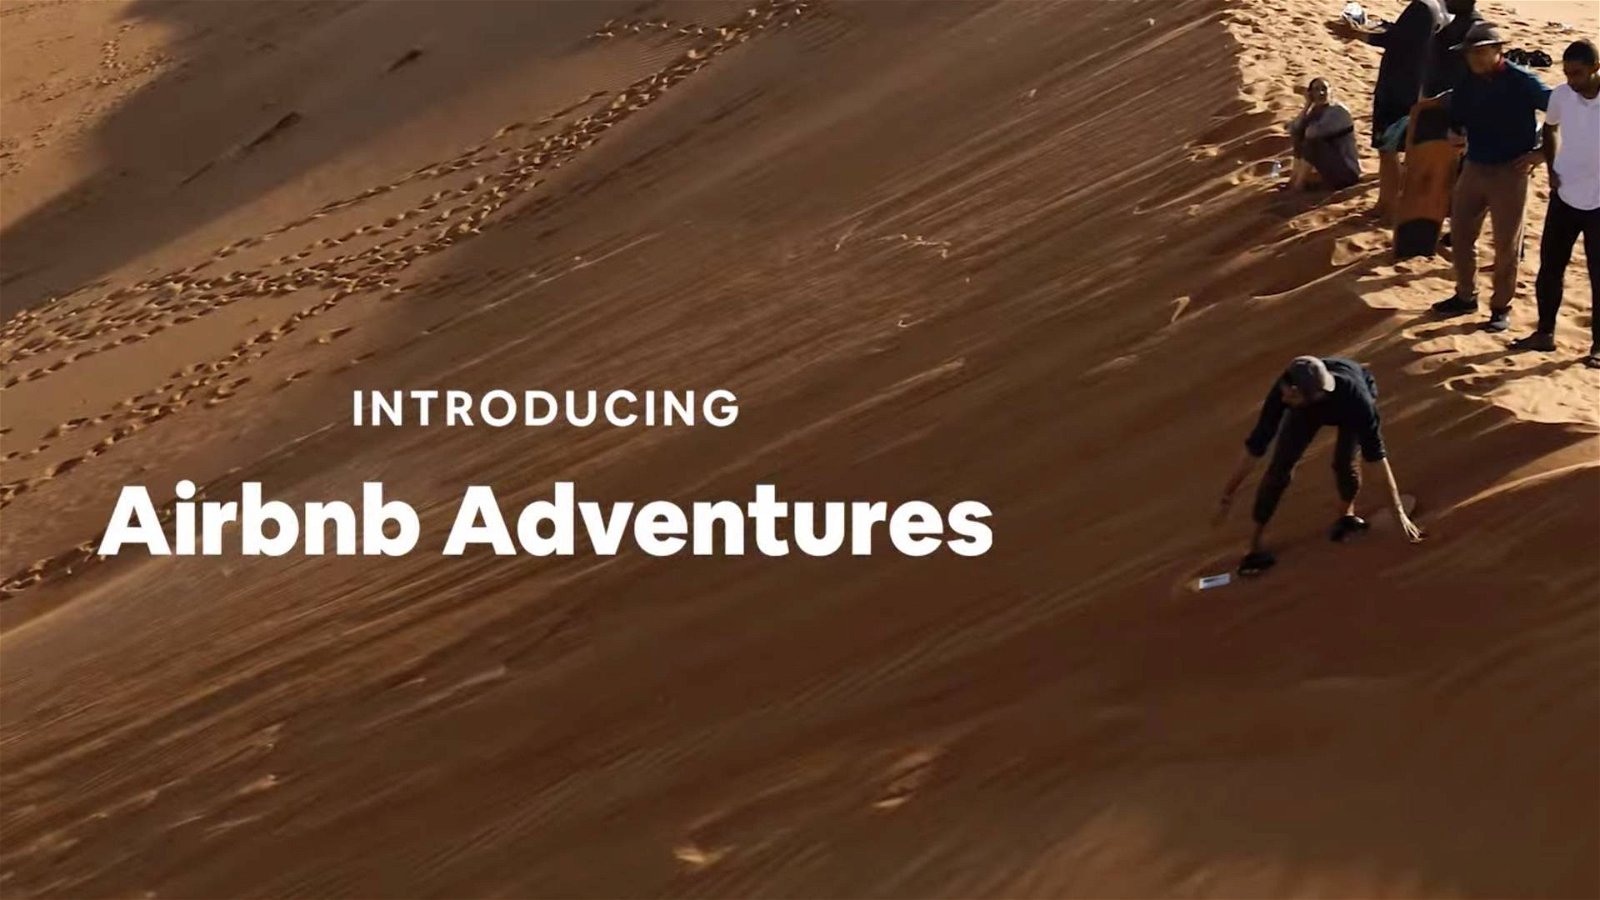 Immagine di Avventure Airbnb, ecco i viaggi organizzati con guide locali